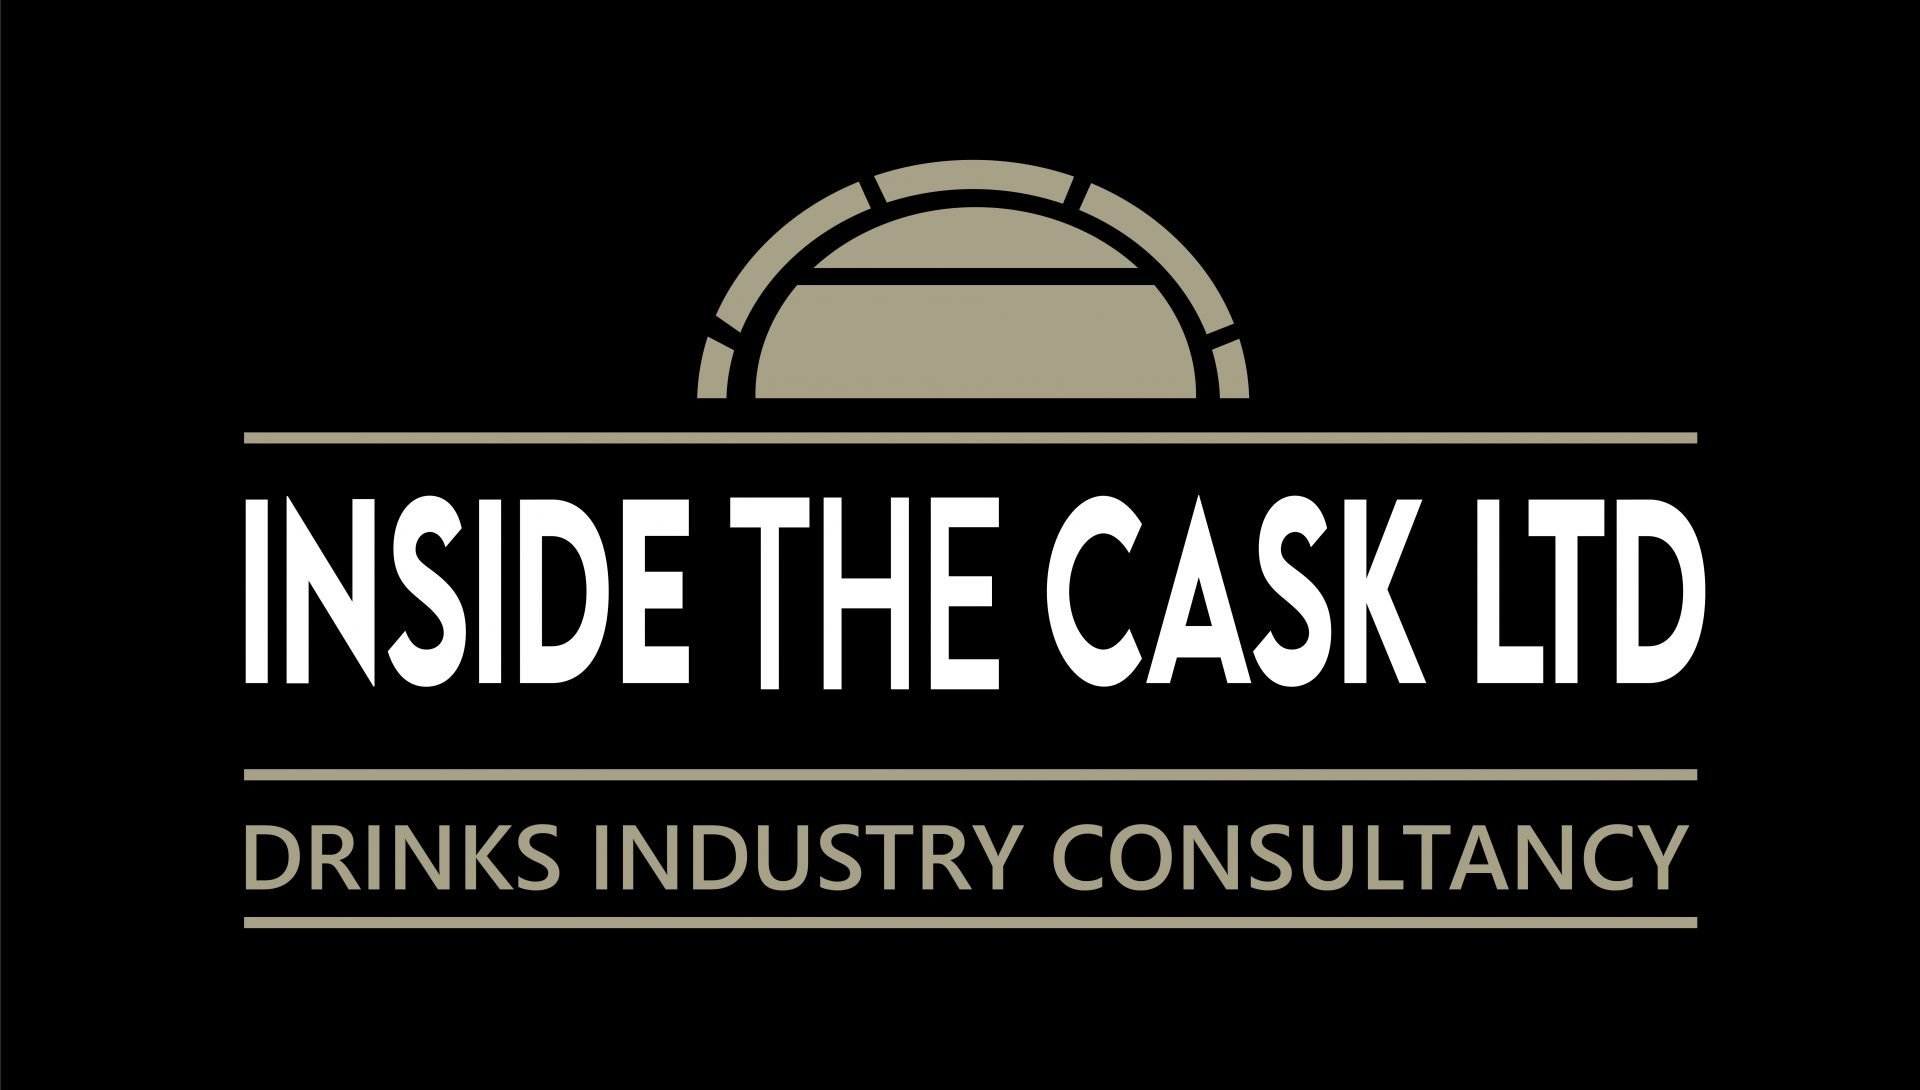 Inside the Cask Ltd